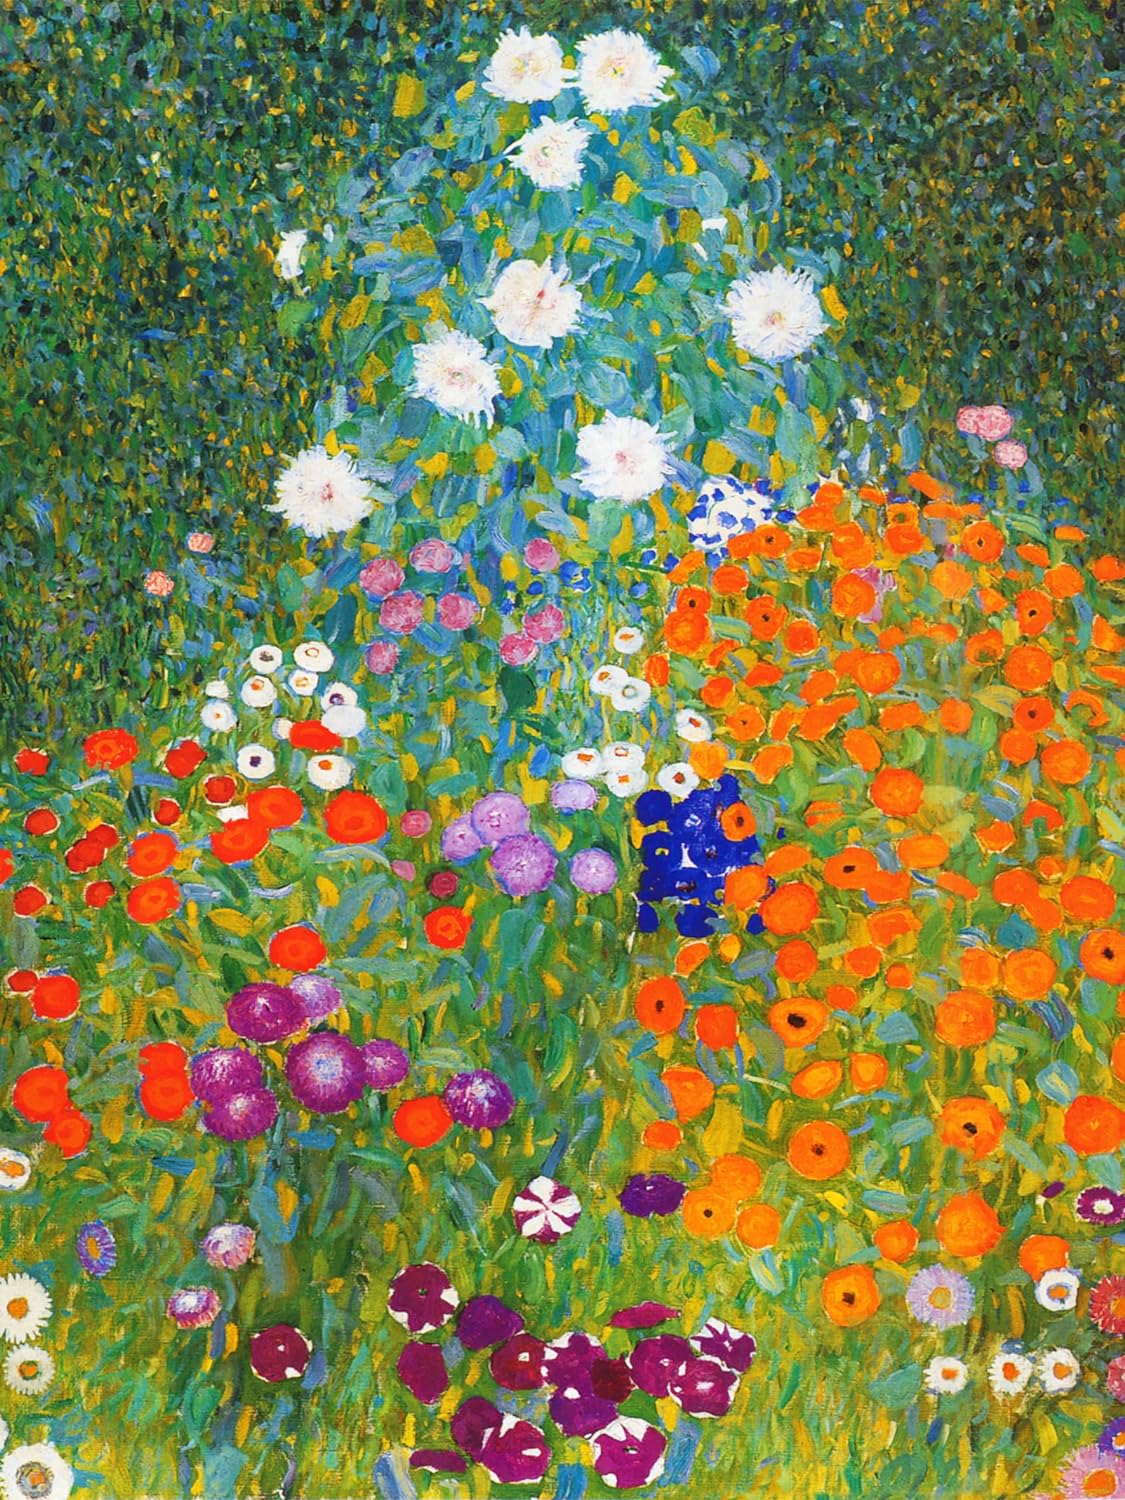 jenesaisquoi Canvas Wall Art Famous Oil Paintings, Flower Garden Gustav Klimt Art Prints, Gustav Klimt Artwork Famous Art Posters Ready To Hang for Living Room, Bedroom, Office (Unframed, 12 x 16)